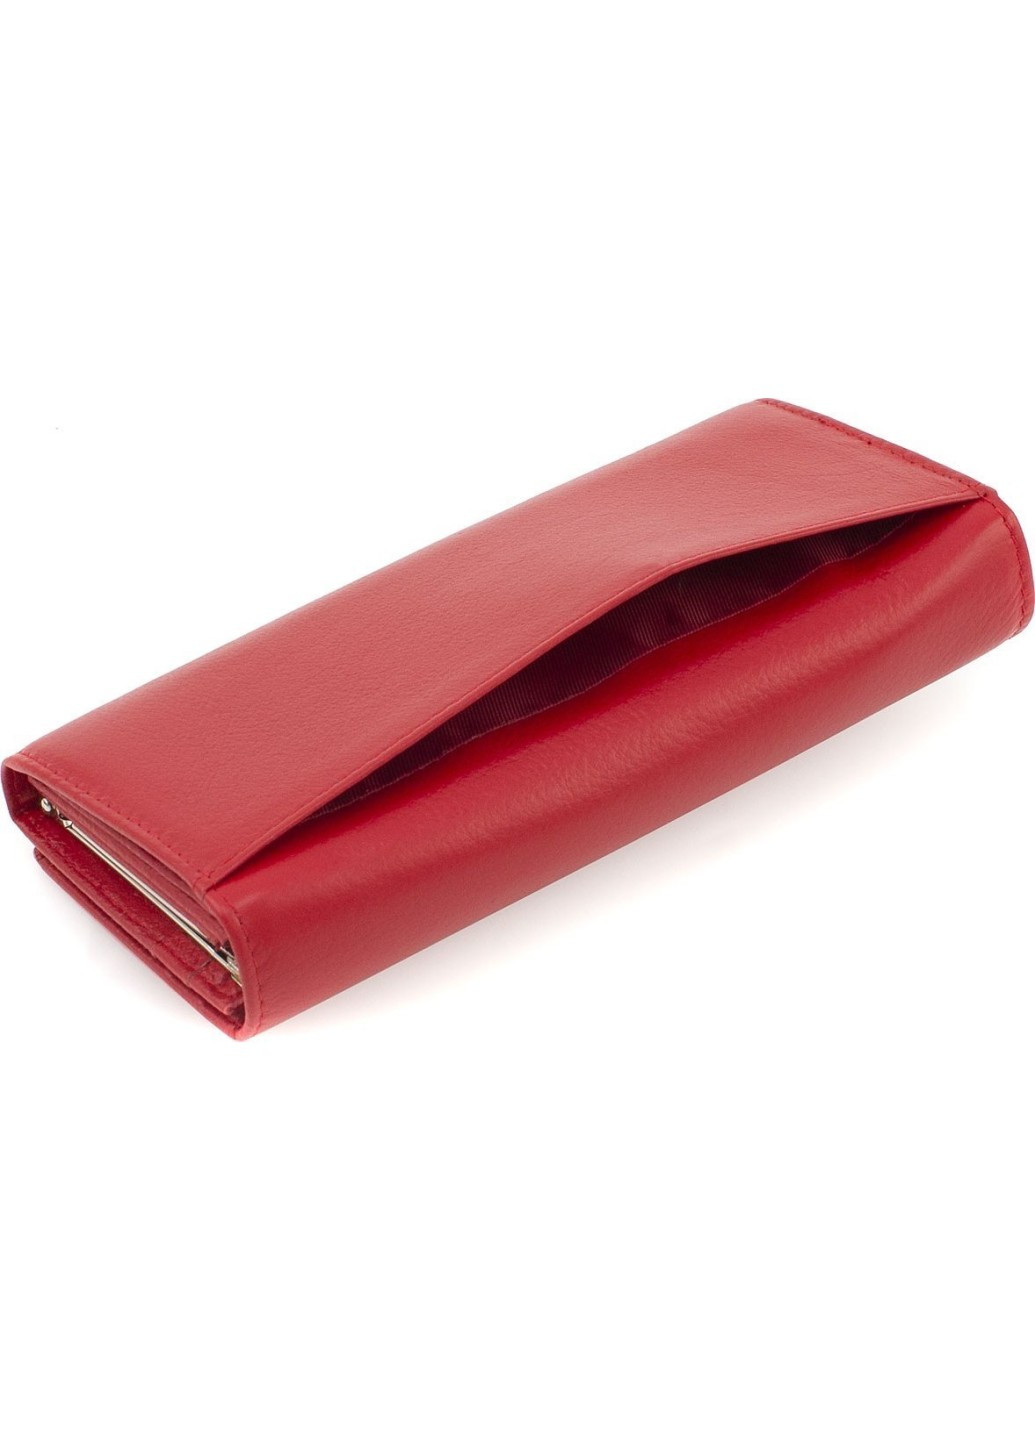 Женский кошелек из натуральной кожи с фиксацией на клапан с магнитами 18,5х9 MA150-1-Red(17977) красный Marco Coverna (259752560)